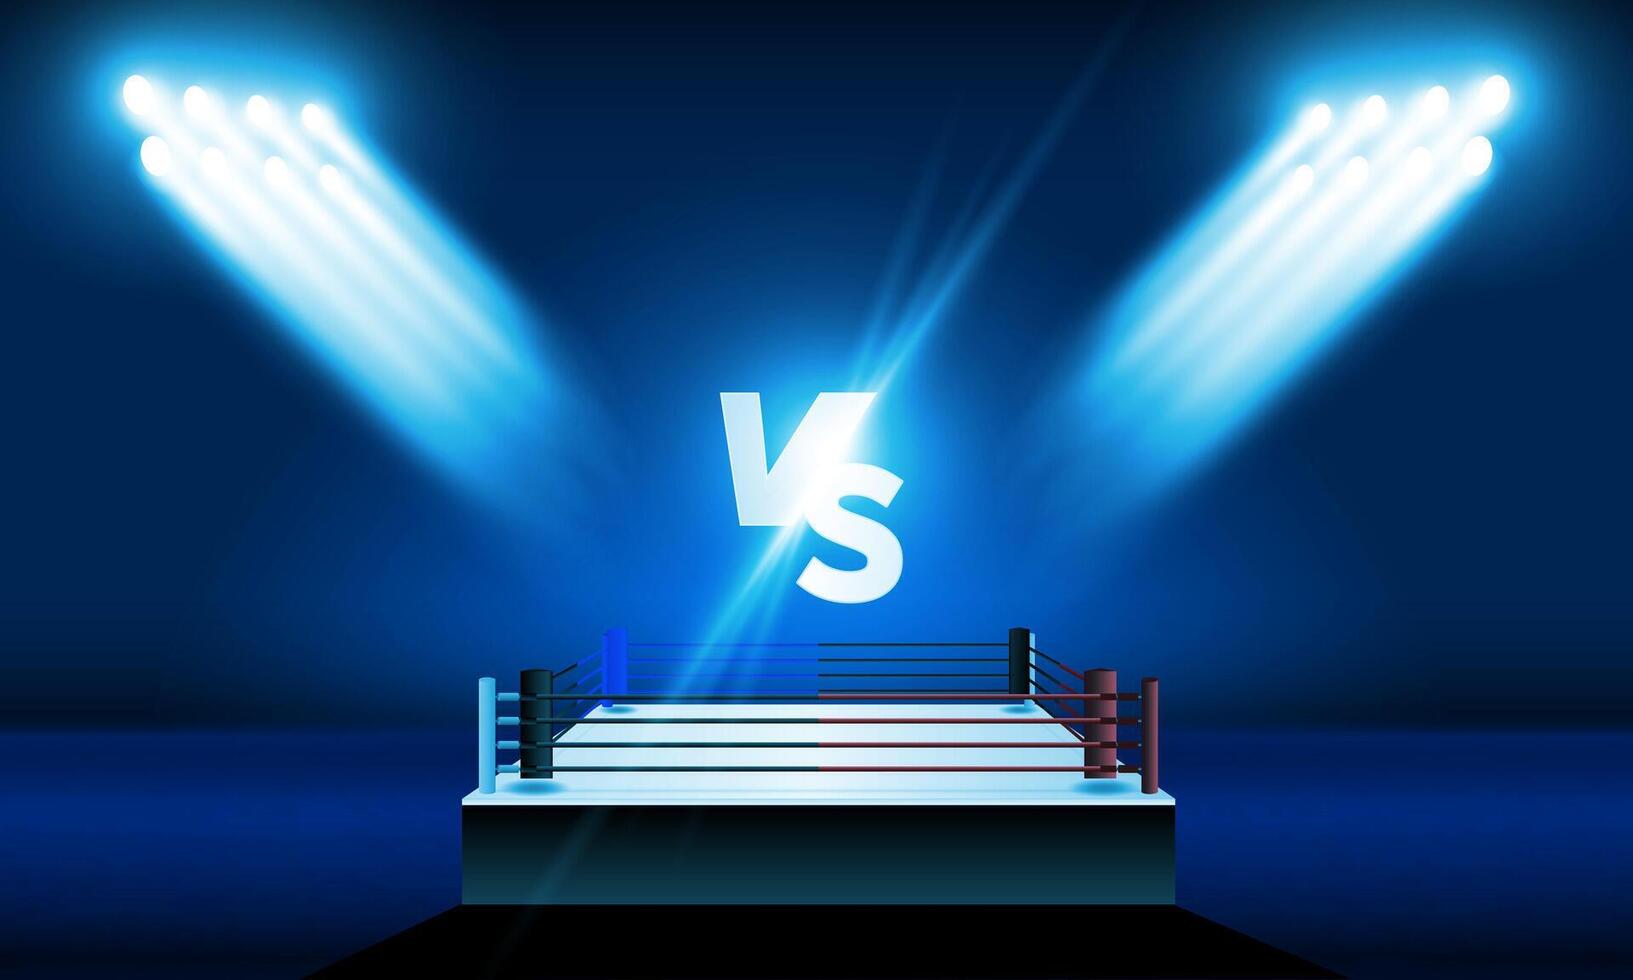 boxning ringa arena och flodljus vektor design ljus stadion arena lampor röd blå. vektor belysning